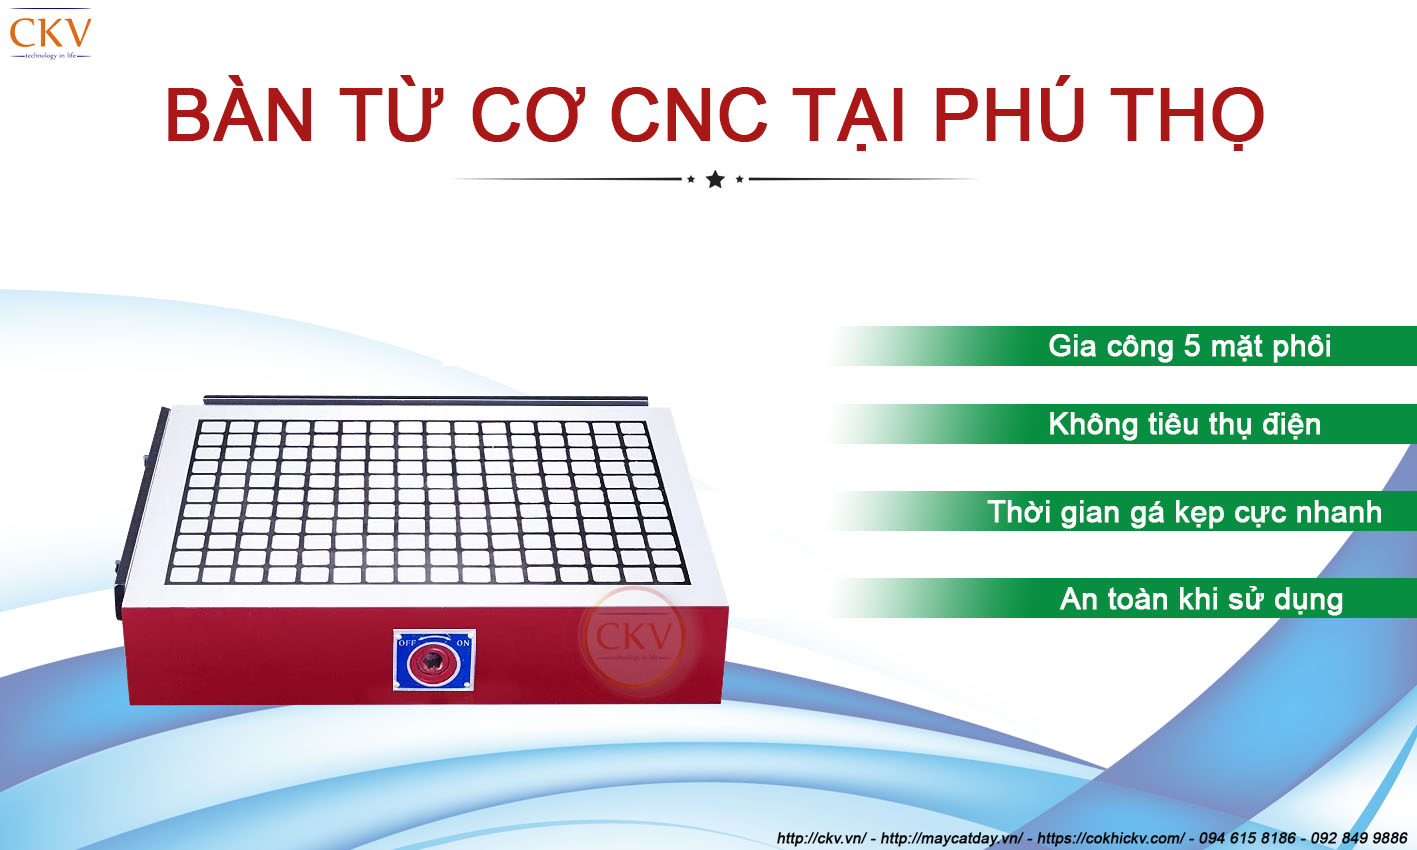 Bàn từ cơ CNC tại Phú Thọ chất lượng cao giá cực rẻ